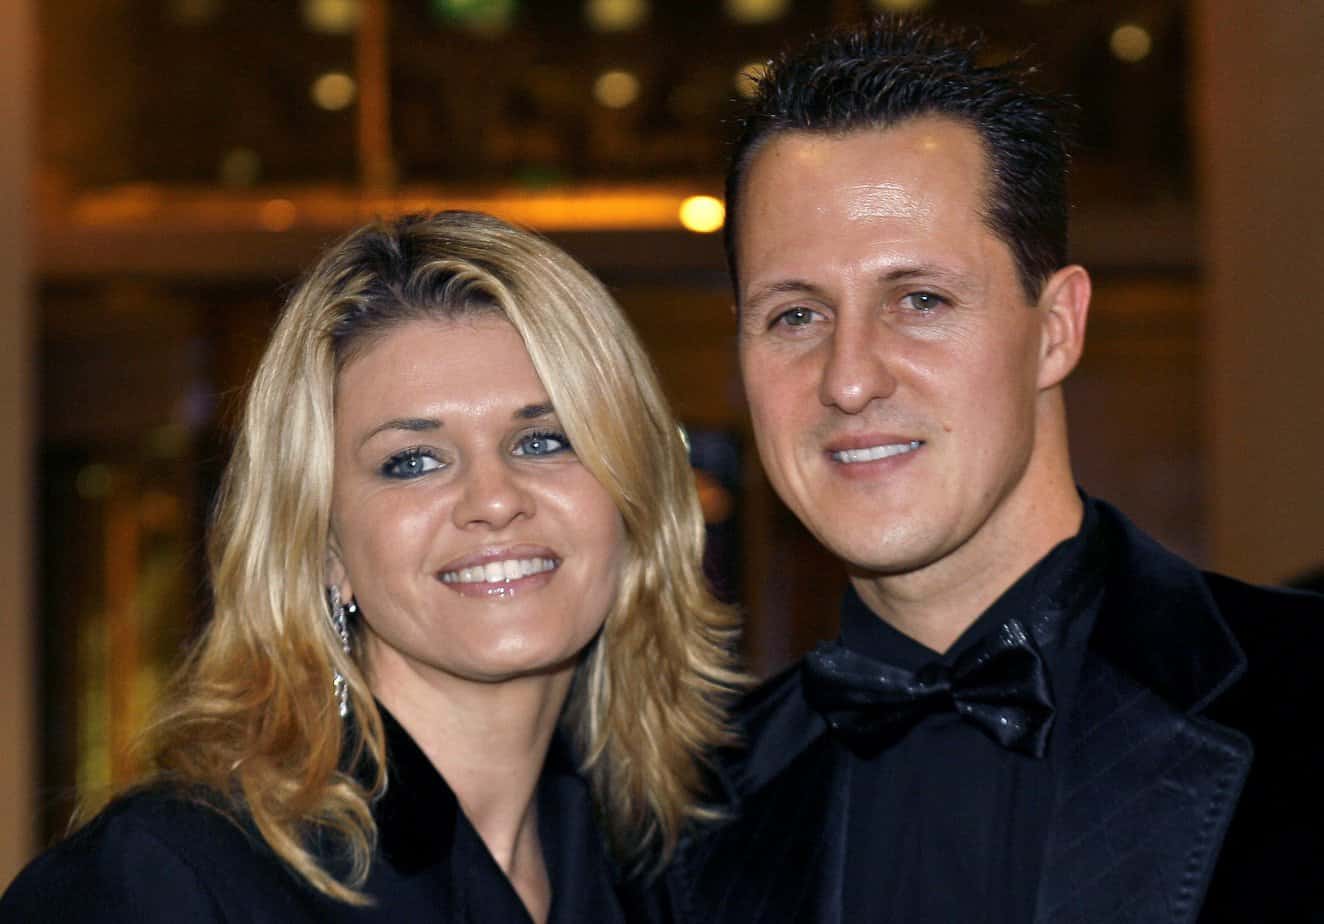 Michael Schumacher with his wife, Corinna Schumacher